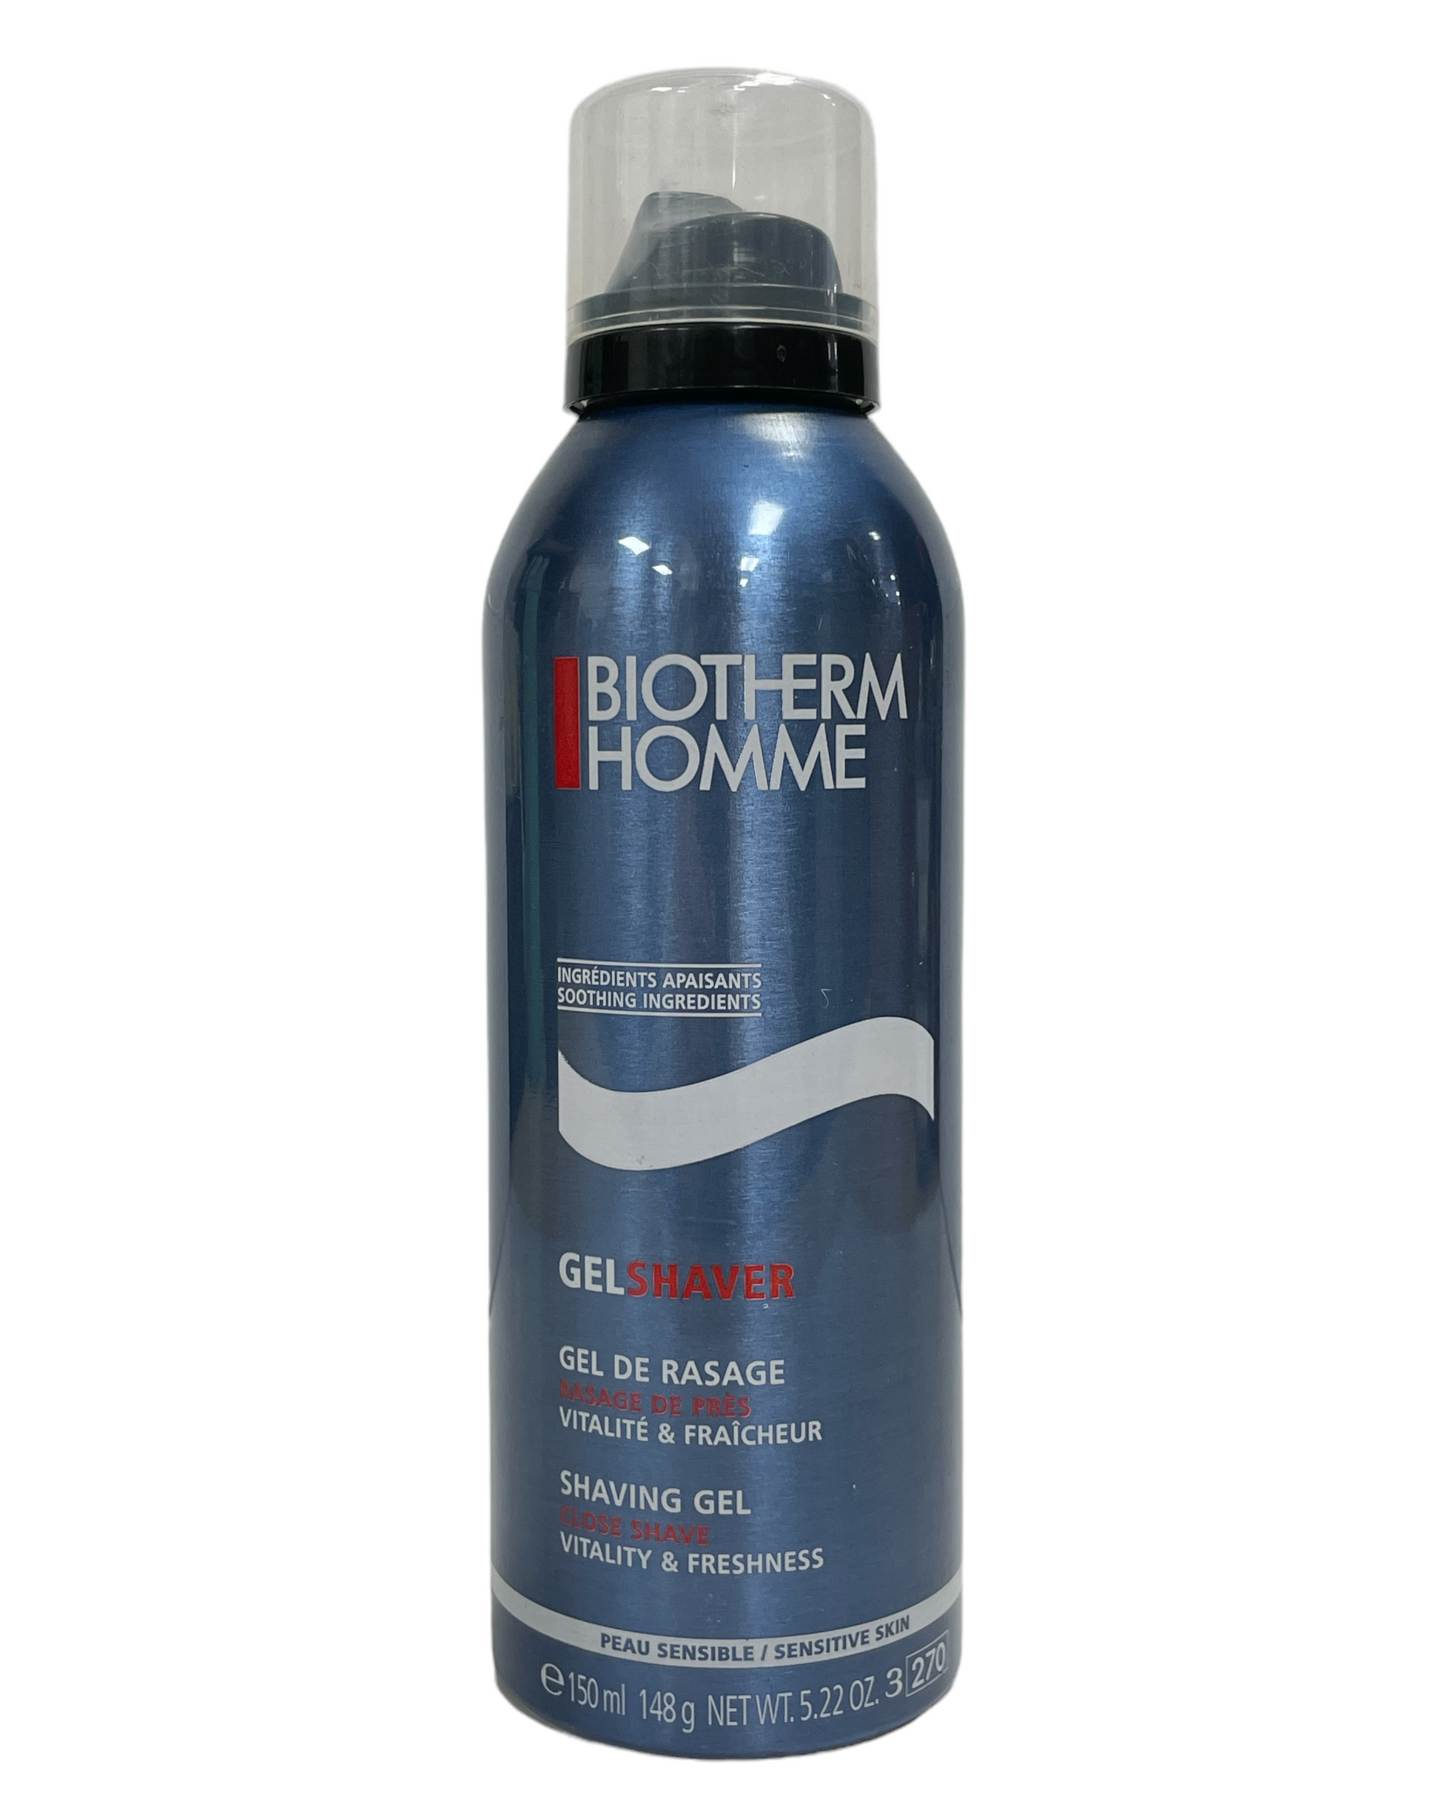 Biotherm Homme Gel Shaver Shaving Gel (150ml / 5.22oz)